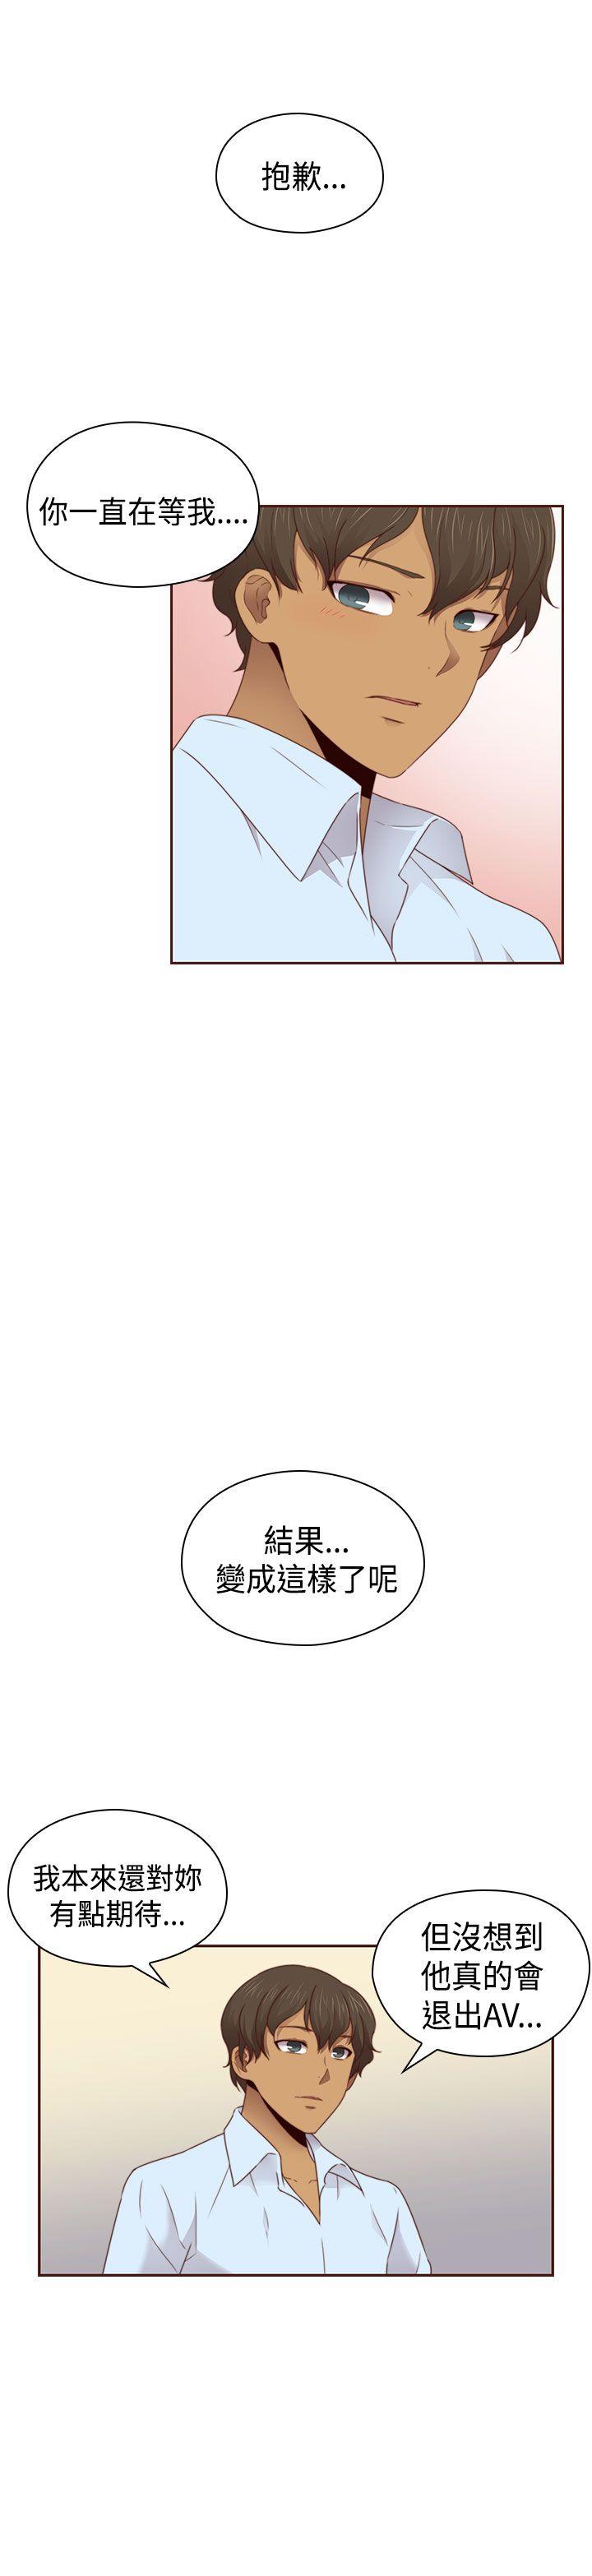 韩国污漫画 H校園 第68话 22